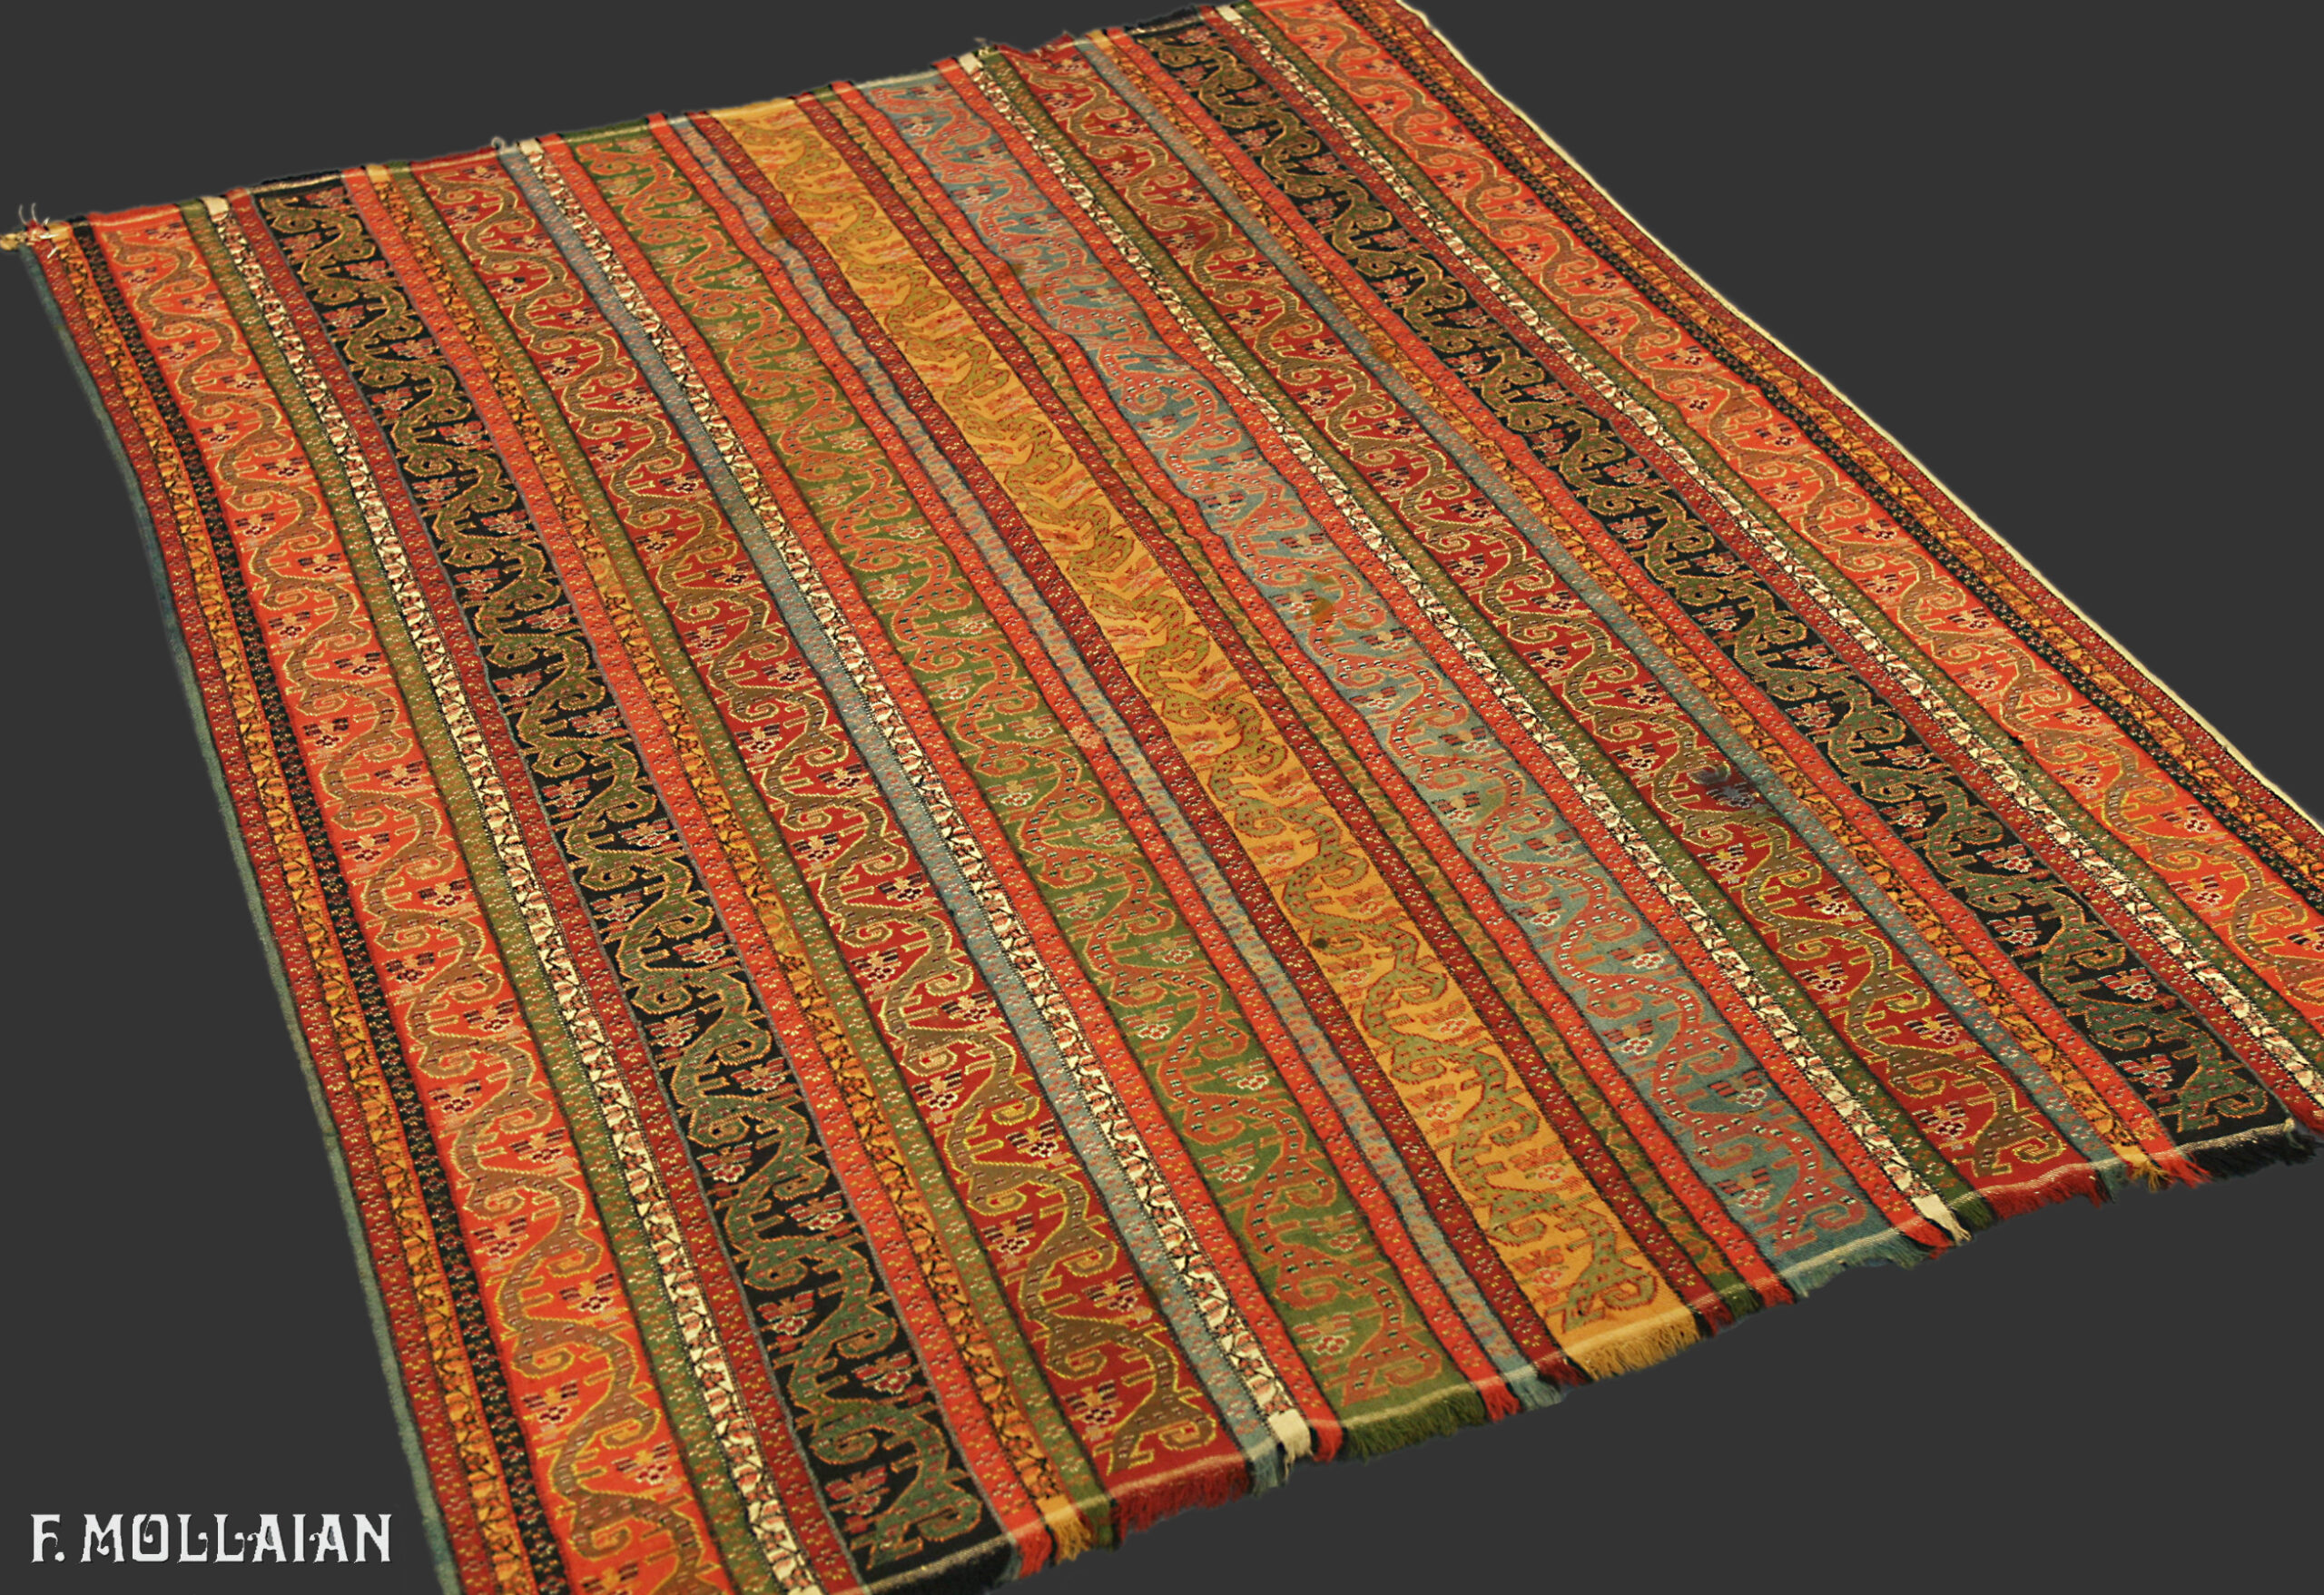 Antique Textile Kerman n°:97158521